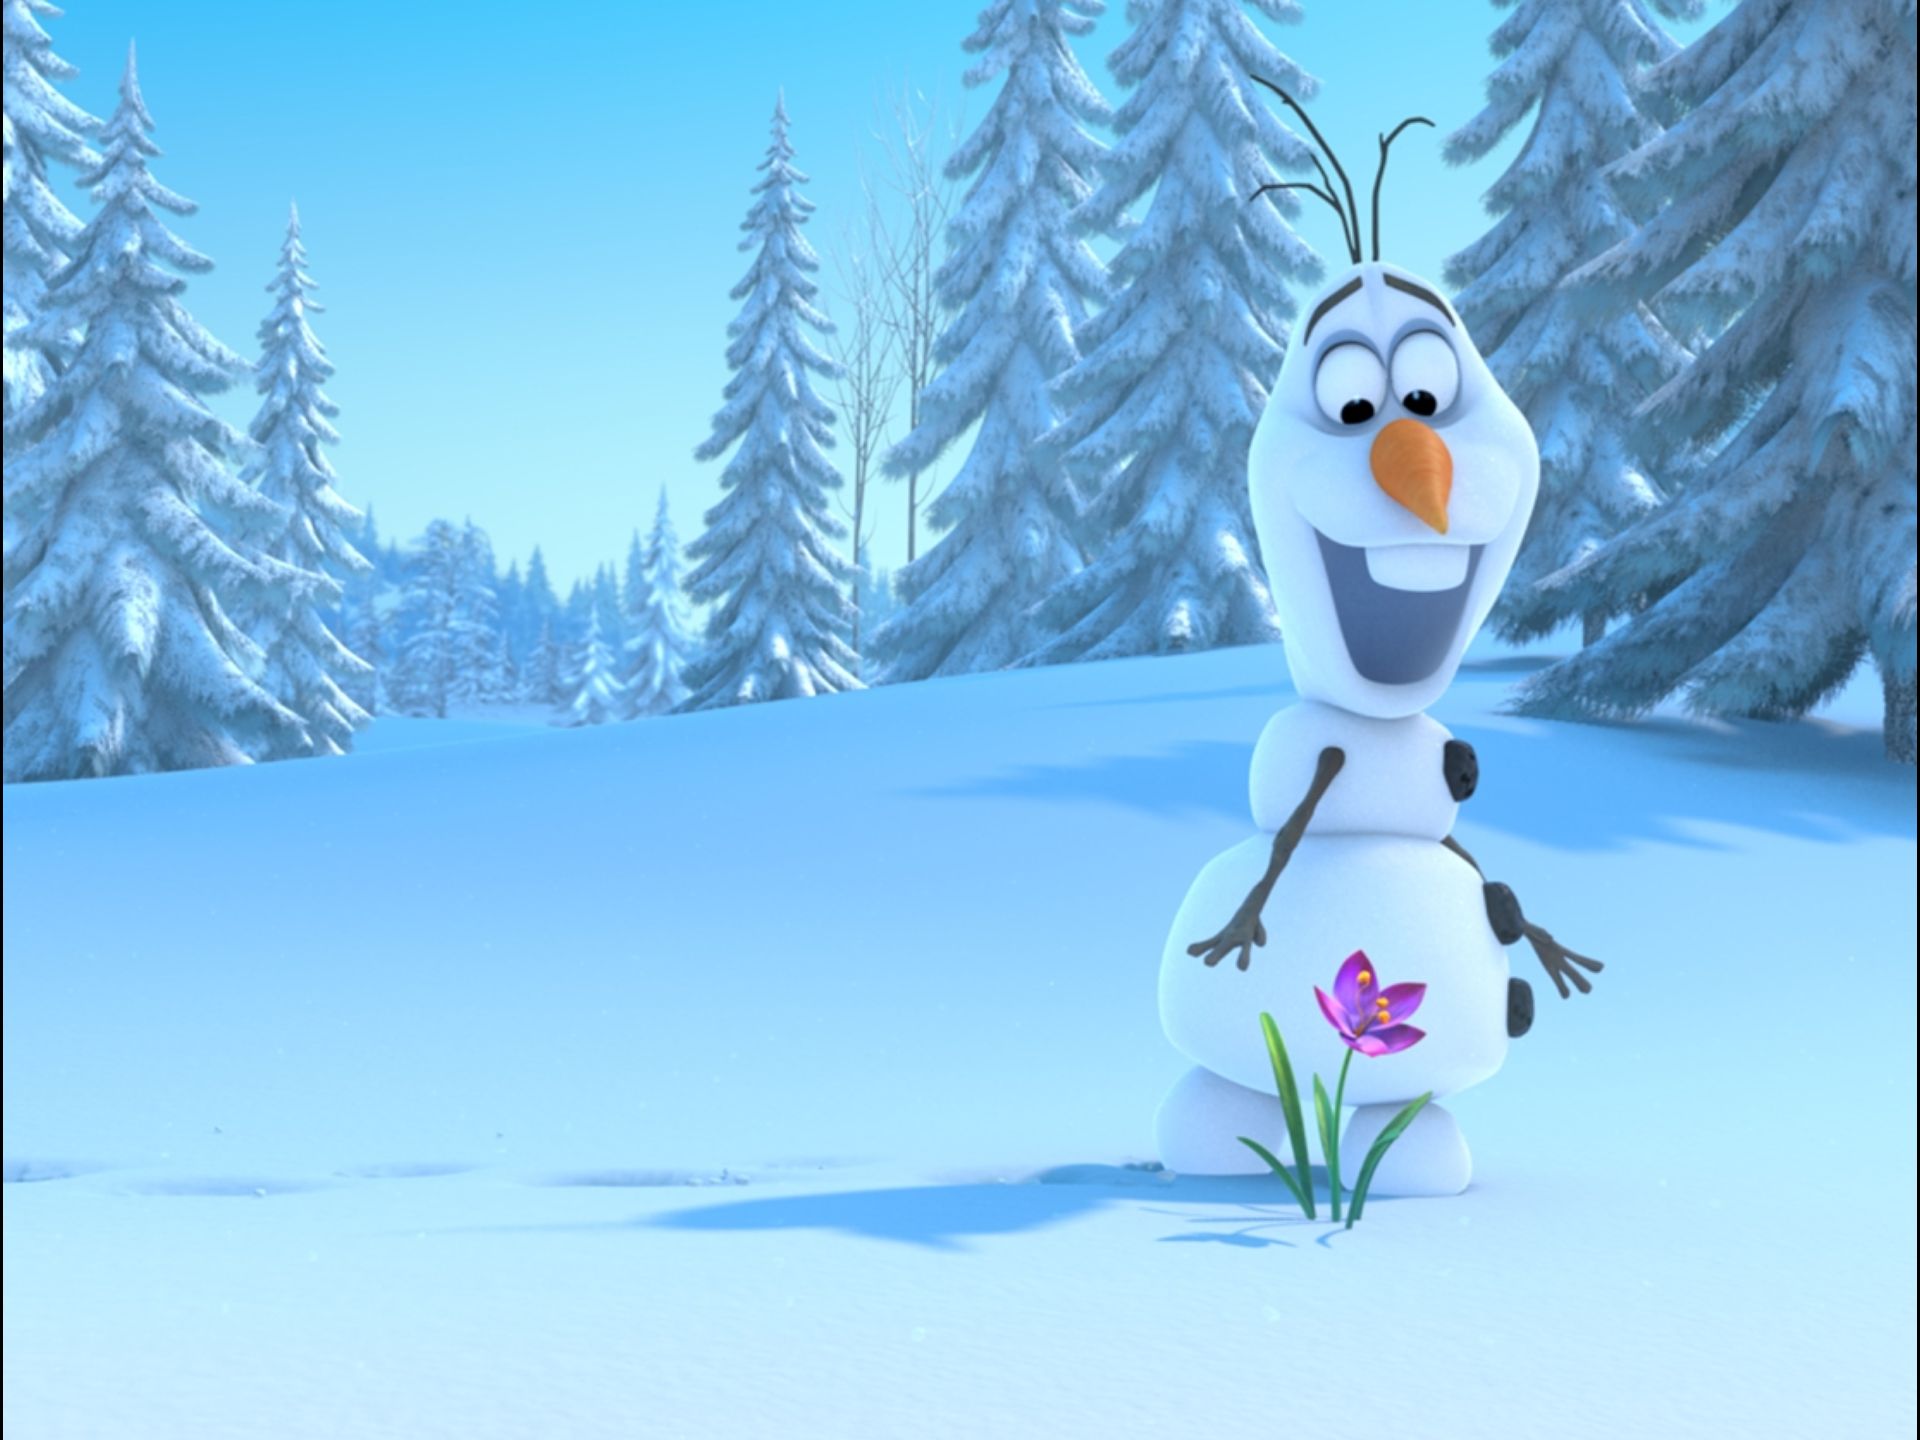 Immagini Natale Frozen.Frozen Il Nuovo Film Di Natale Firmato Disney Le Nuove Mamme